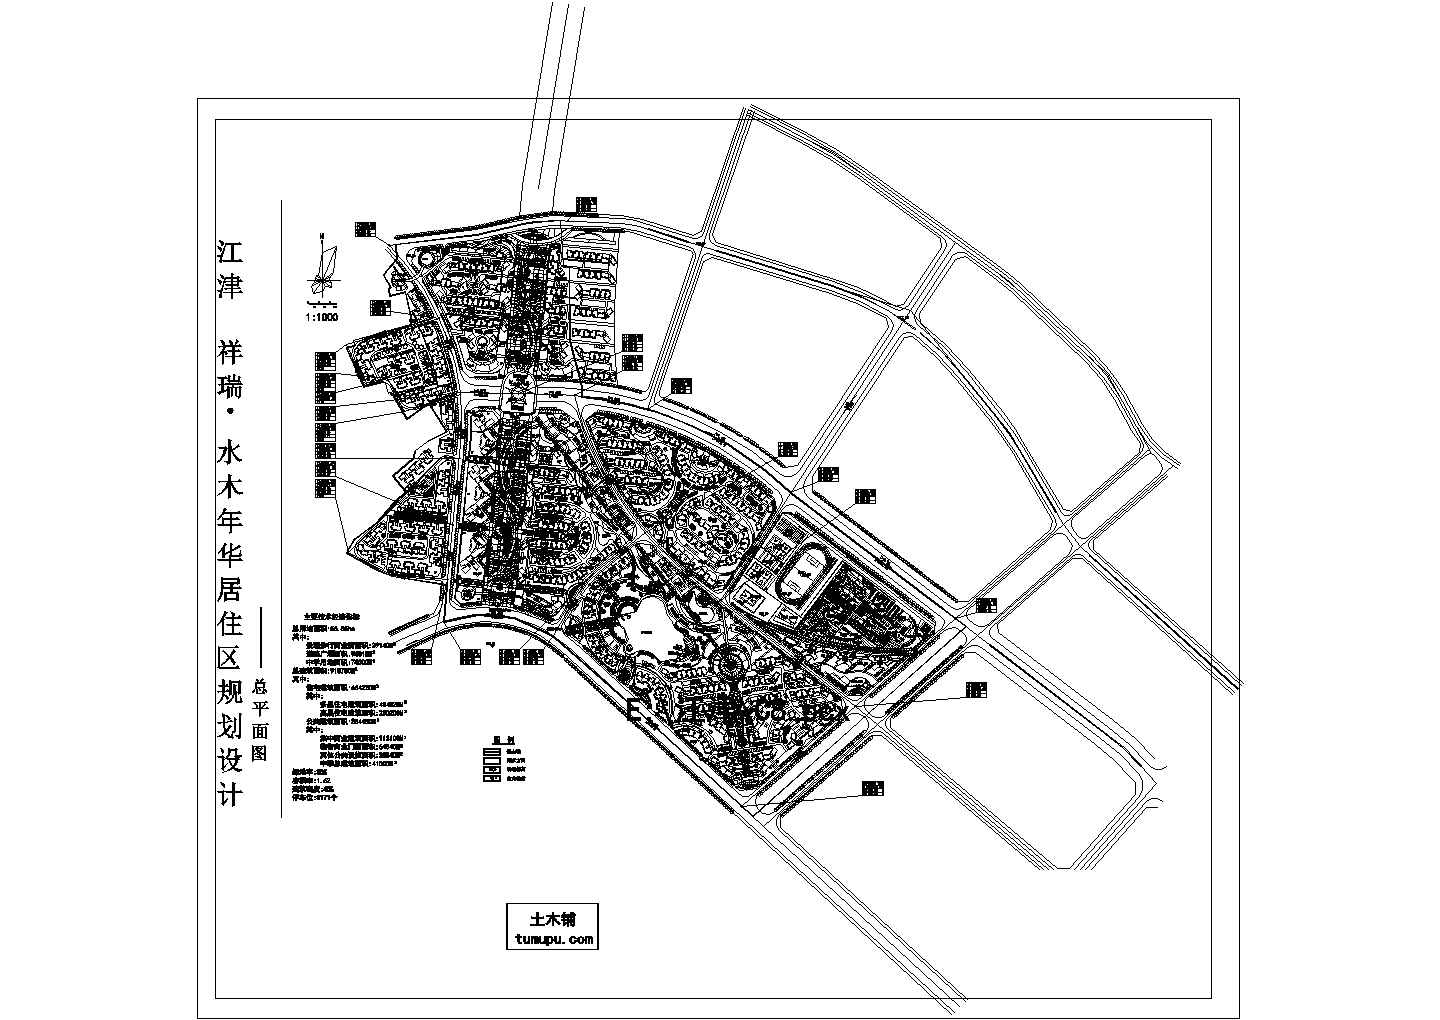 江津祥瑞水木年华居住区景观规划设计cad图(含总平面图)